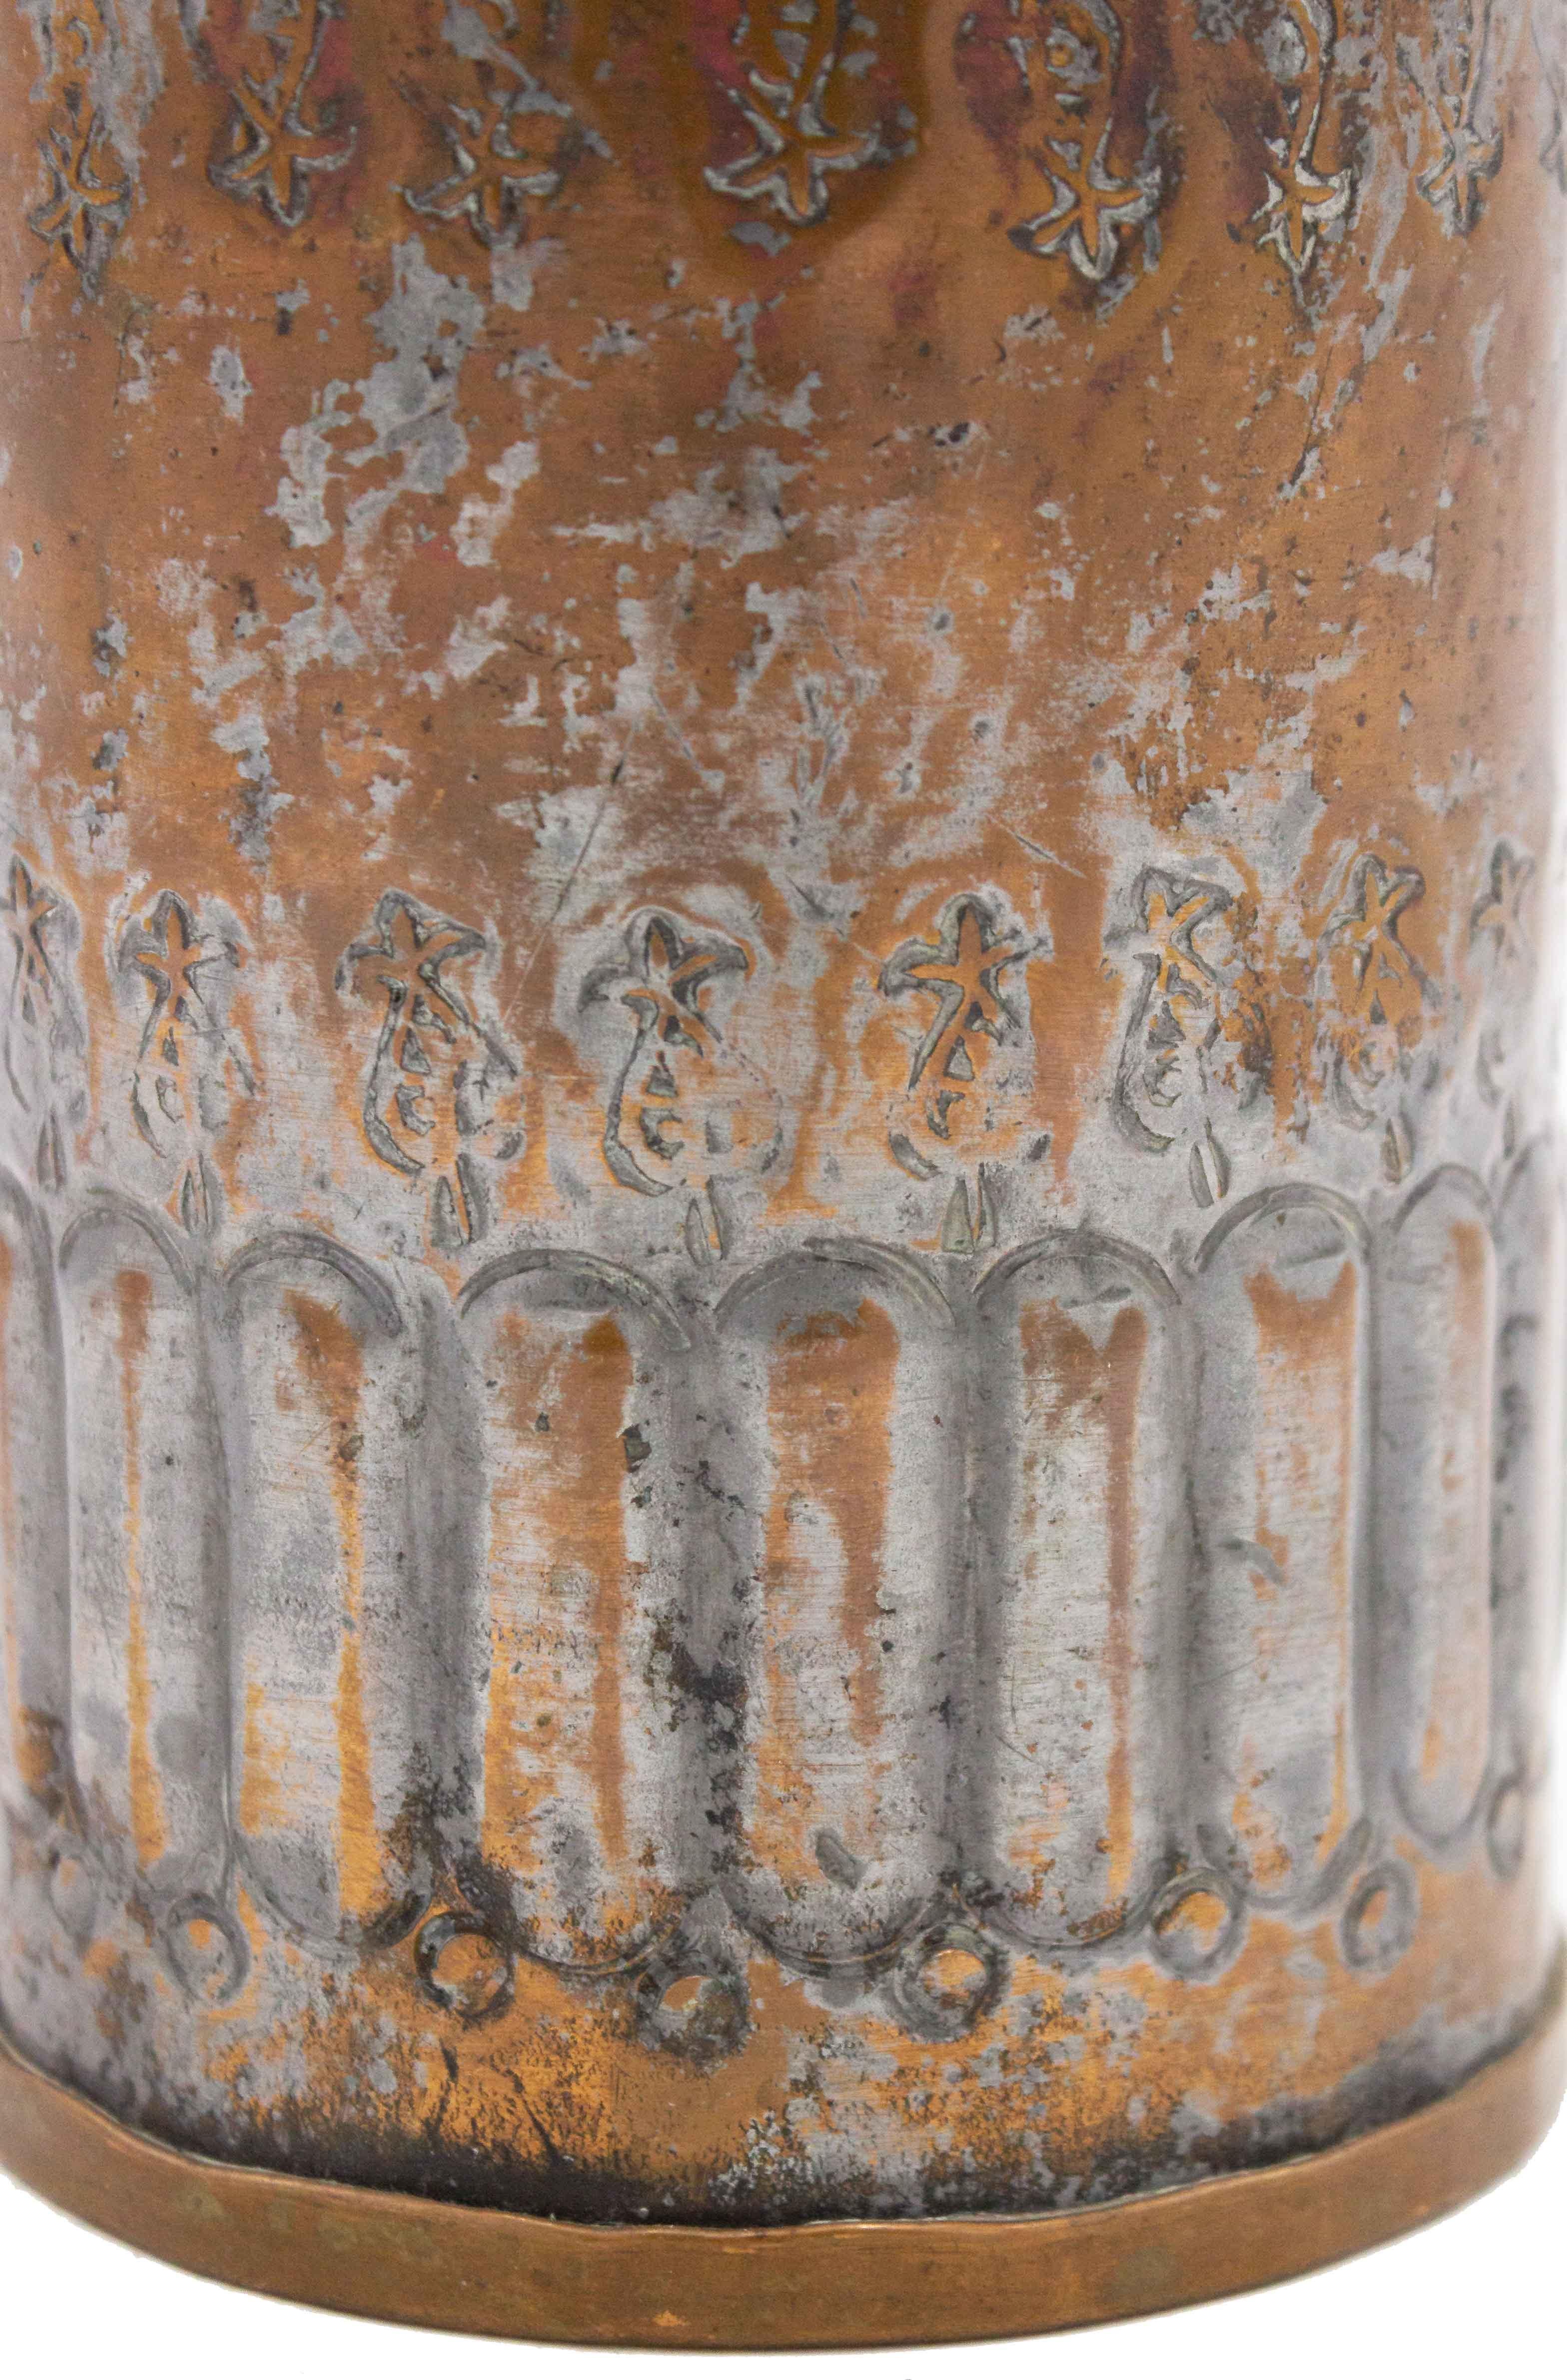 Récipient cylindrique de style Renaissance anglaise (20e siècle) en métal argenté sur cuivre, avec motif cannelé et gravé.
 